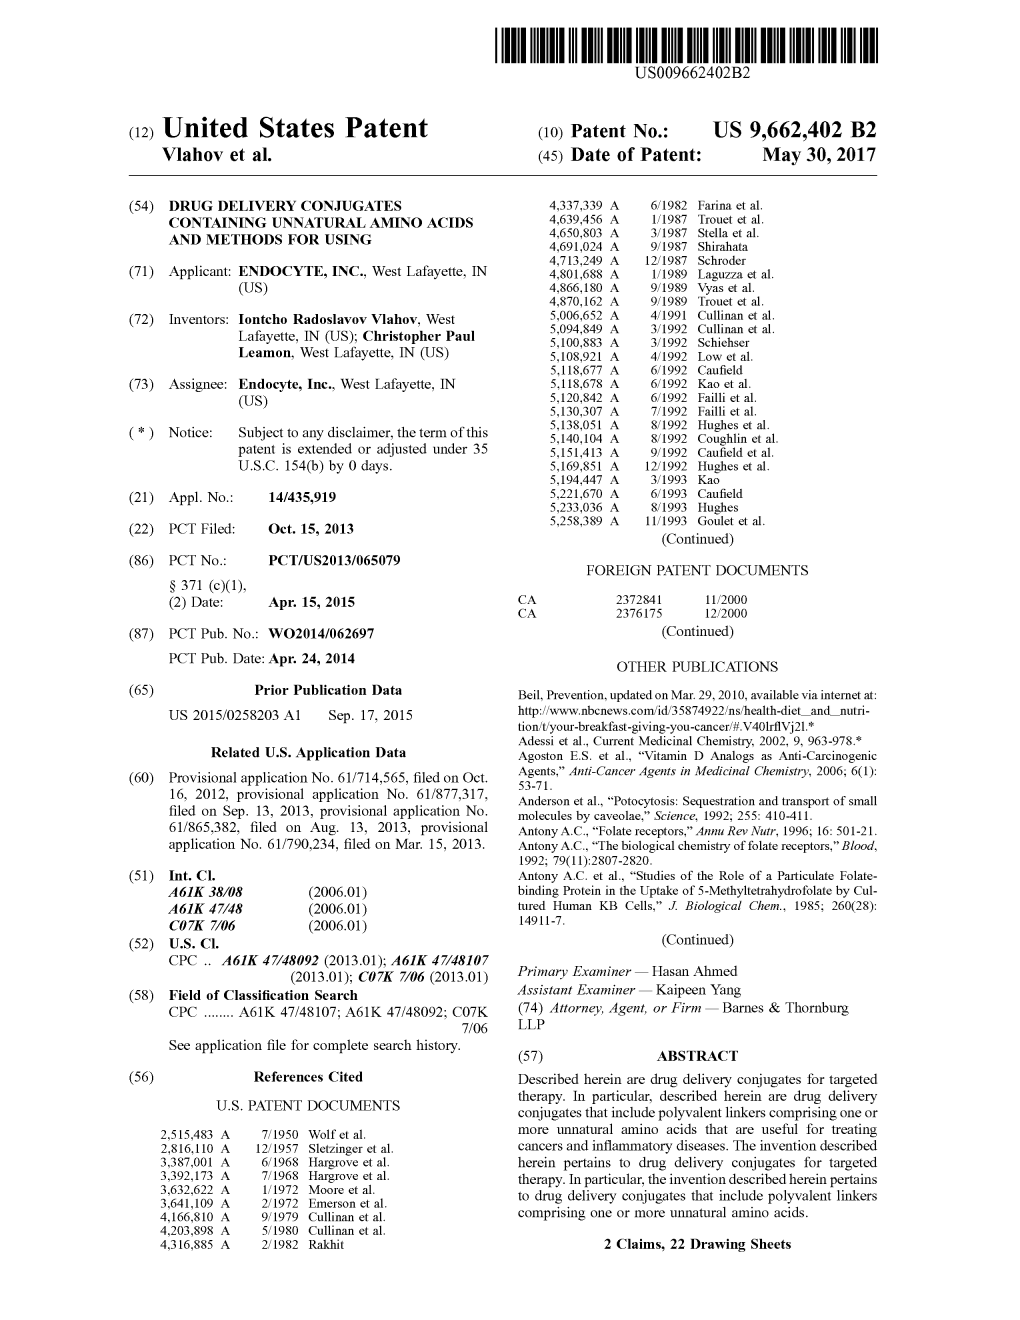 United States Patent (2013,01); Cozk 706 (2013.01) Primary Examiner